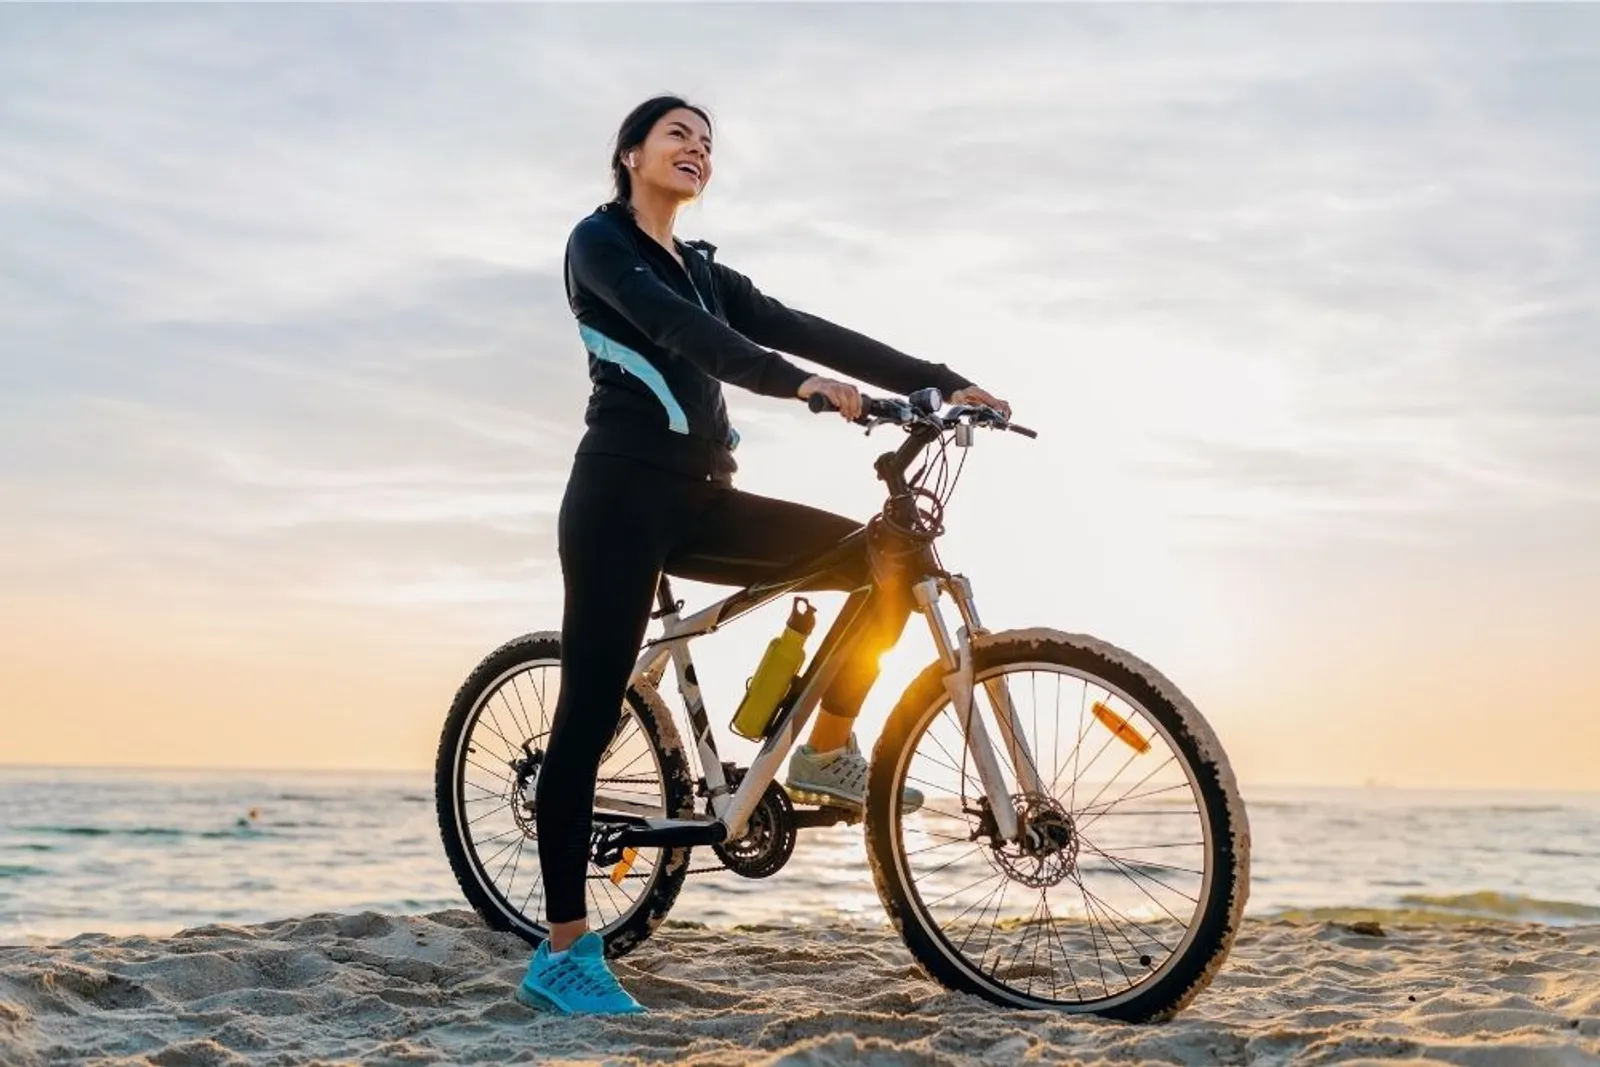 Manfaat Bersepeda Bagi Perempuan, Bikin Langsing Sekaligus Bahagia